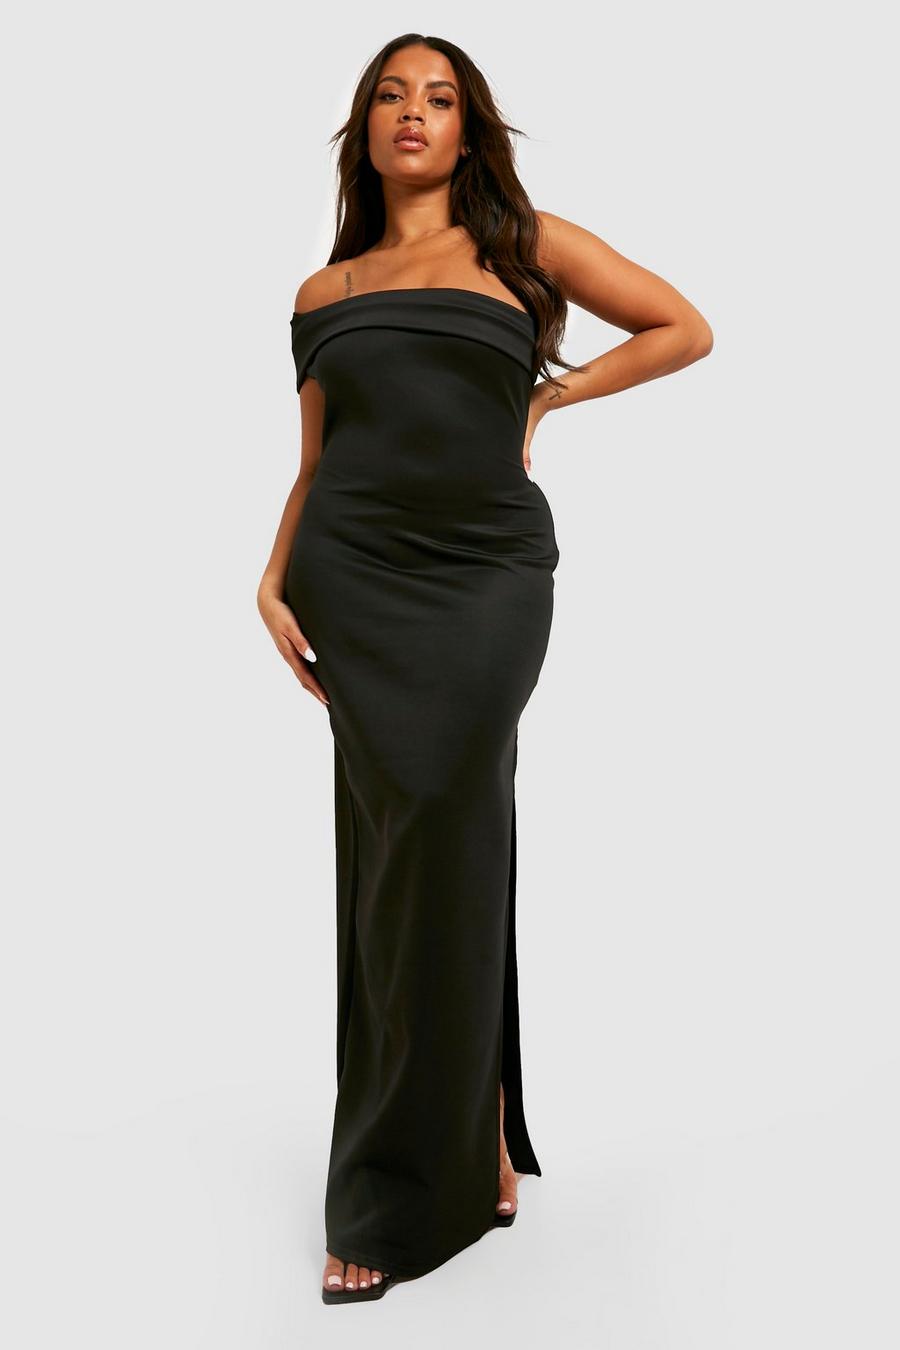 שחור black שמלת מקסי פרחונית מבד סקובה עם כתפיים חשופות, מידות גדולות